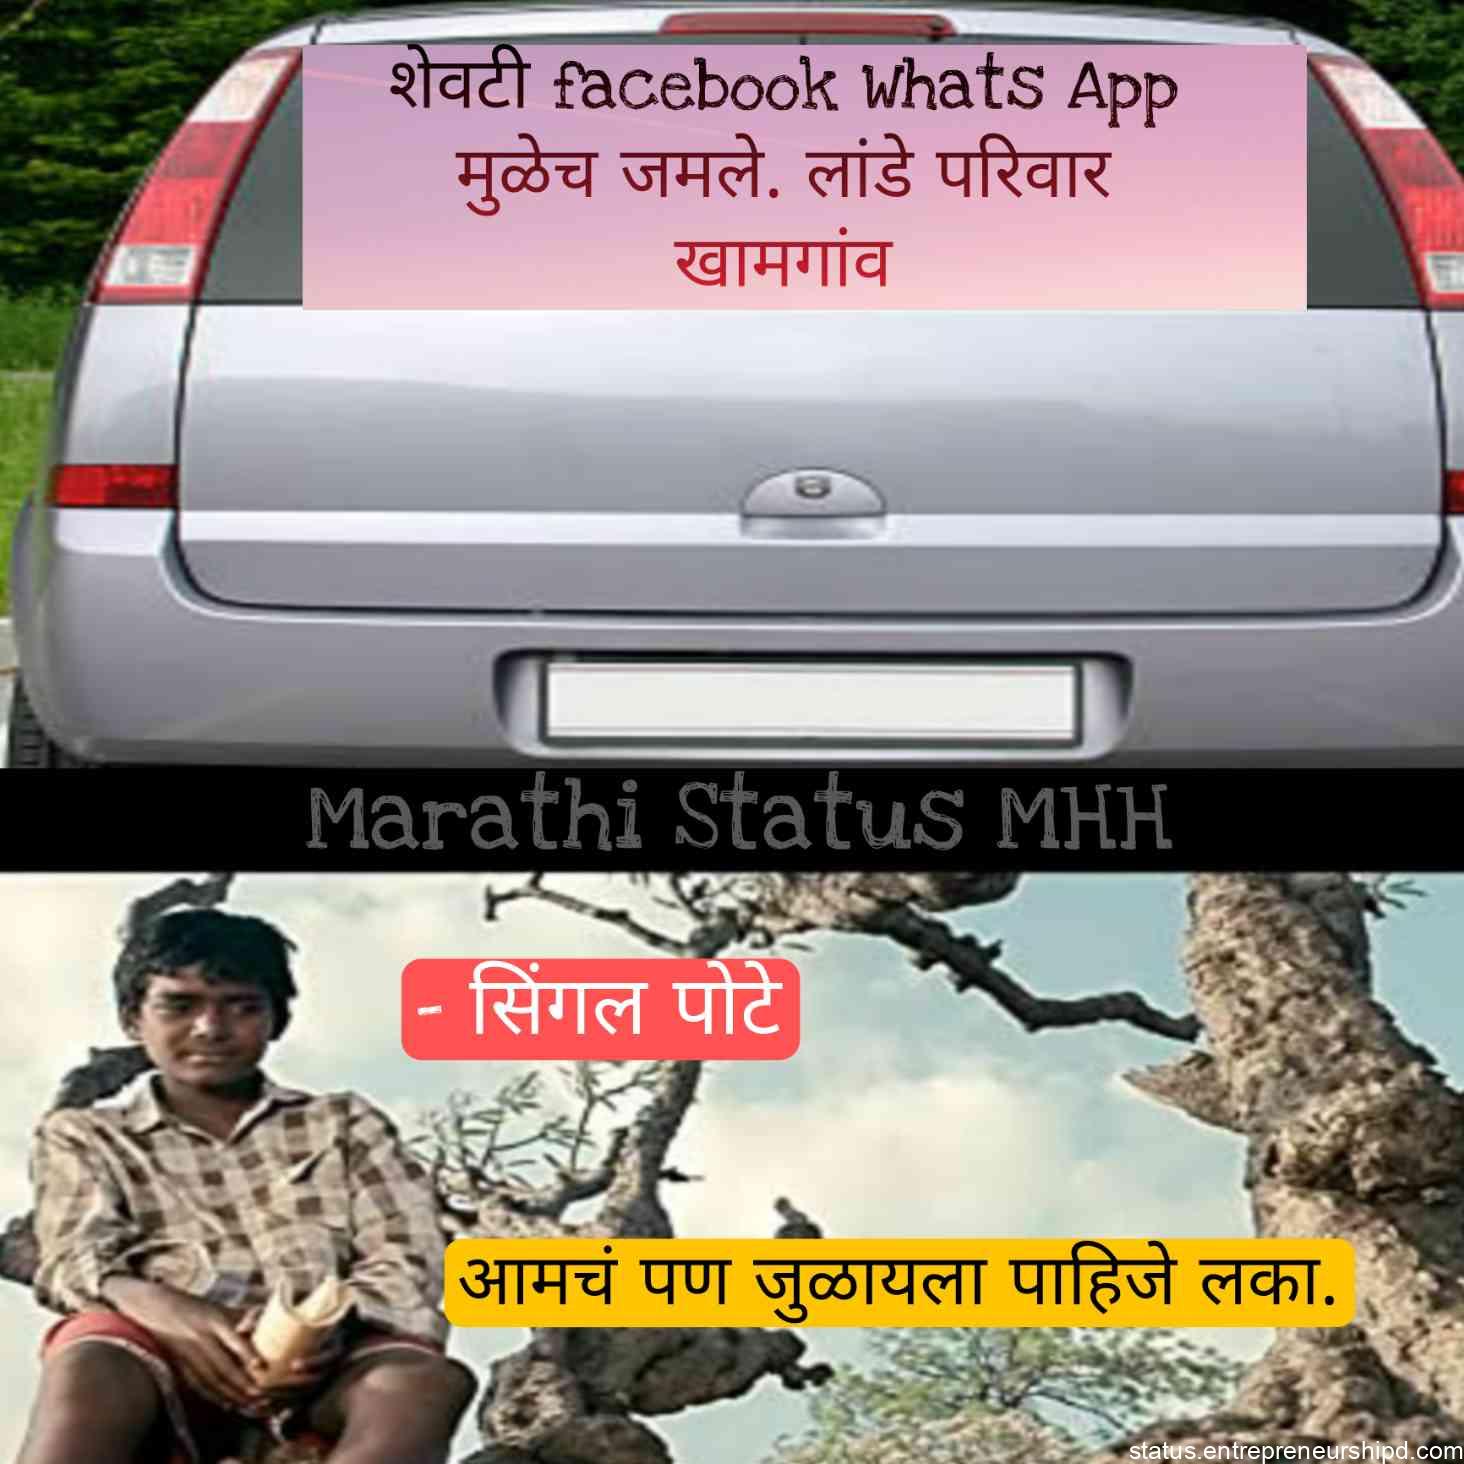 On marriage Marathi memes